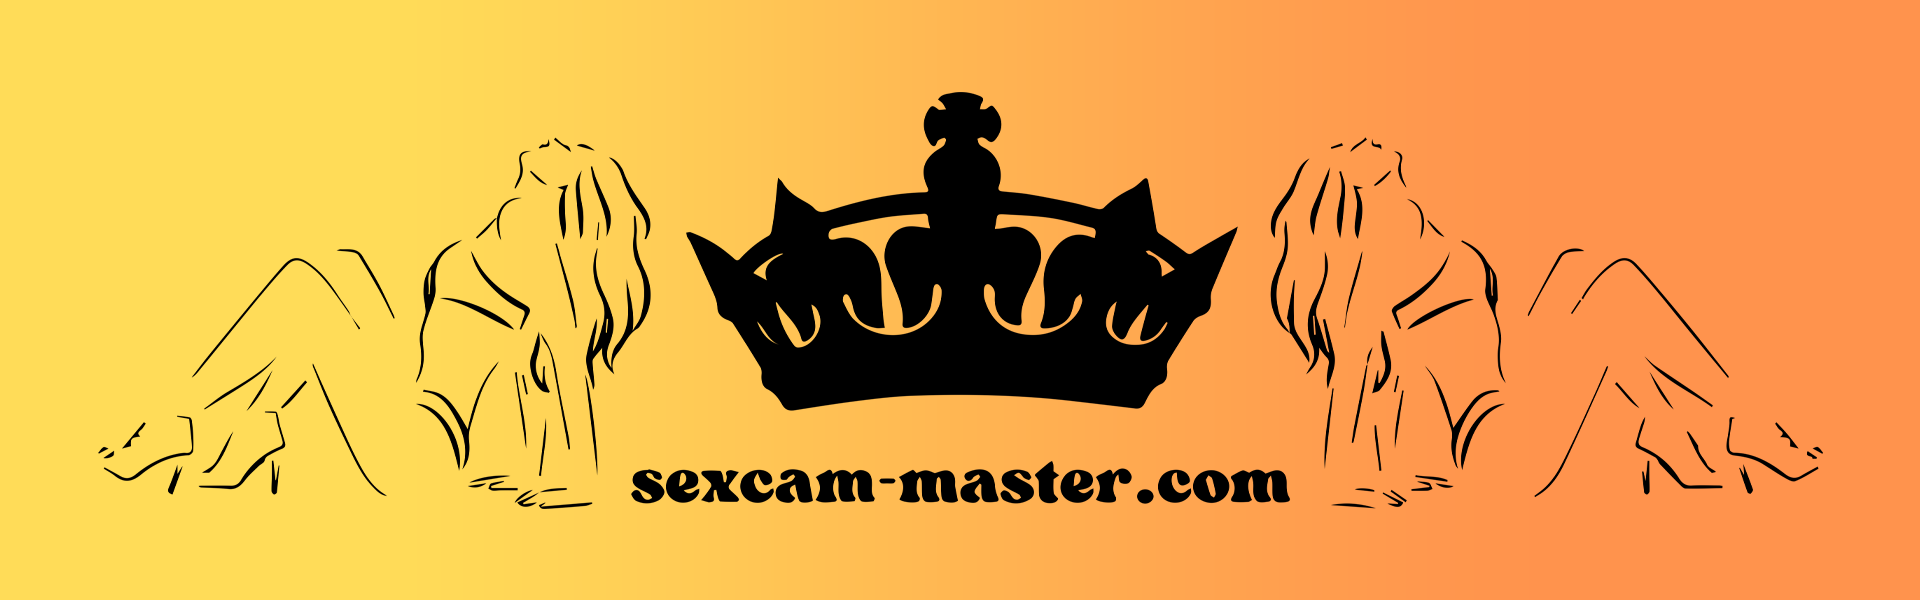 sexcam-master-header-1920x600px